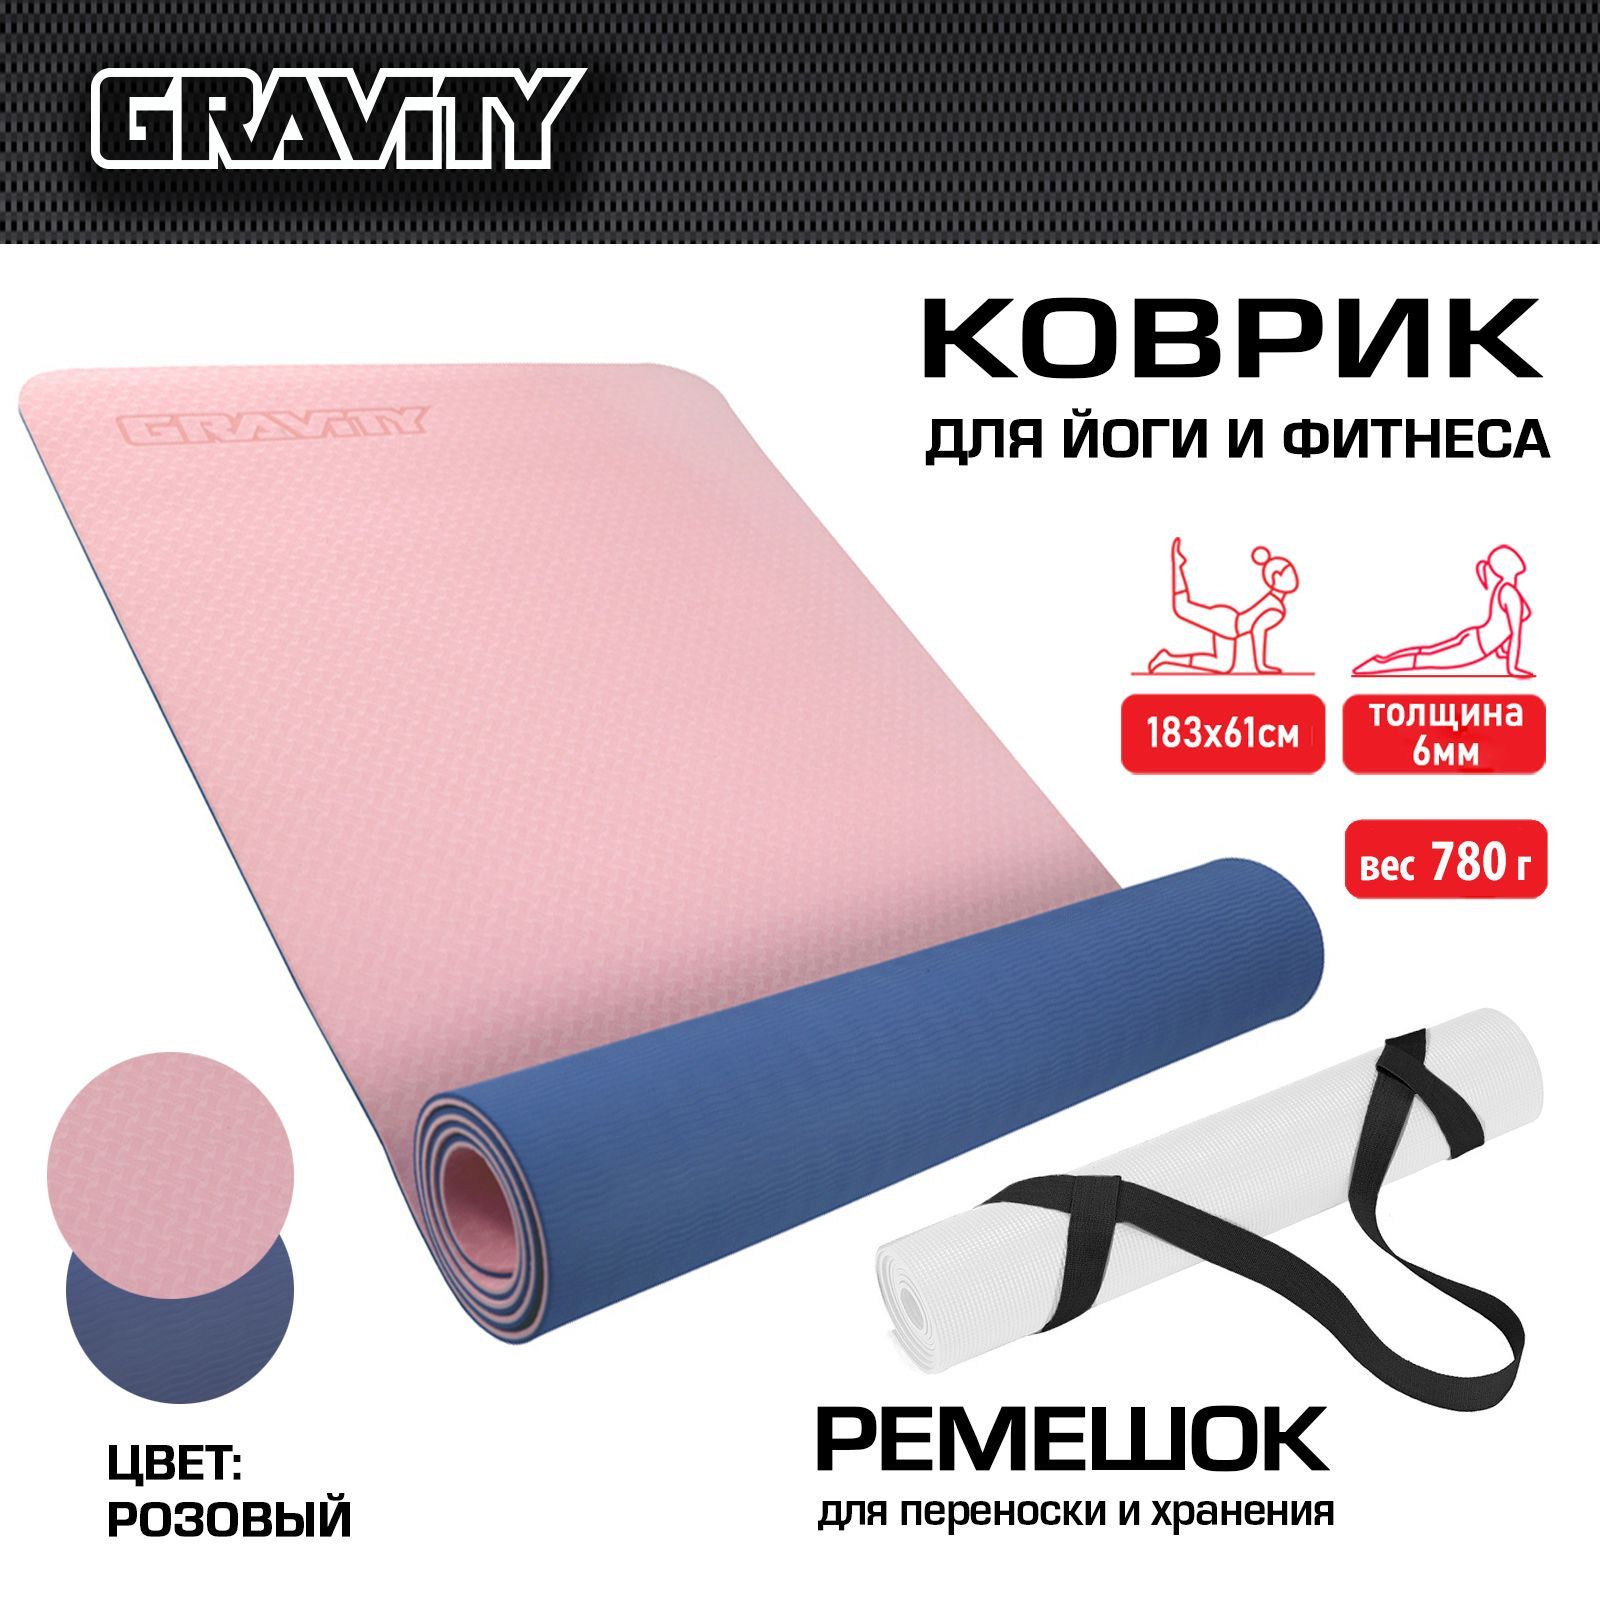 Коврик для йоги и фитнеса Gravity TPE, 6 мм, розовый, с эластичным шнуром, 183 x 61 см